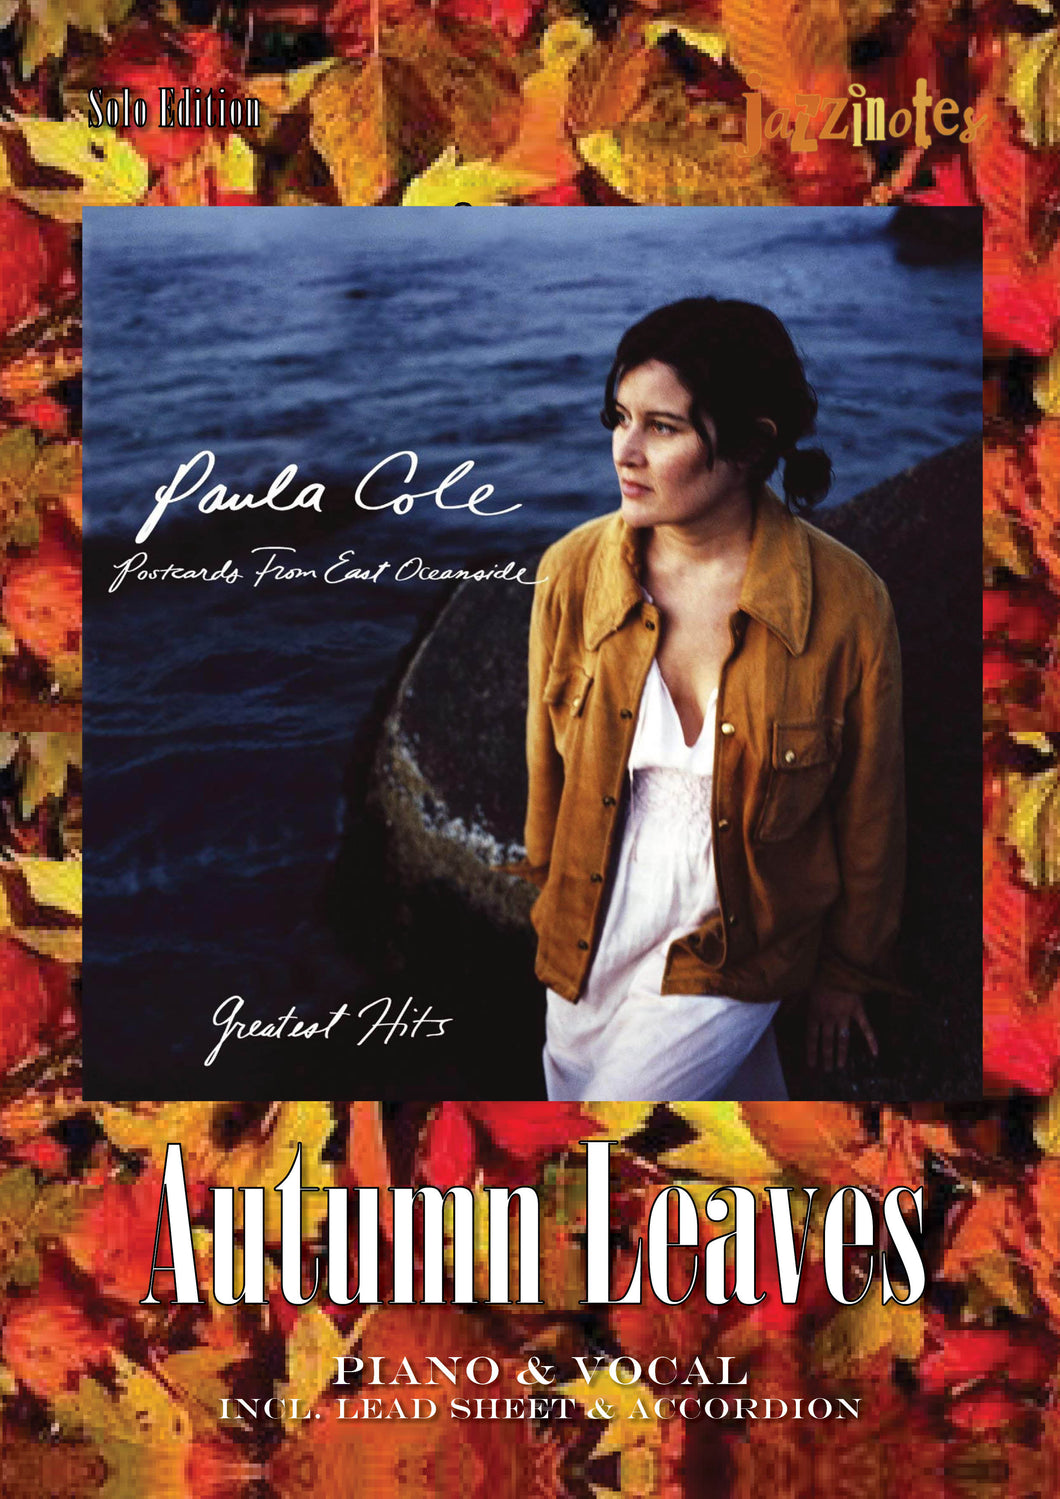 Cole, Paula: Autumn Leaves (Les Feuilles Mortes) - Sheet Music Download